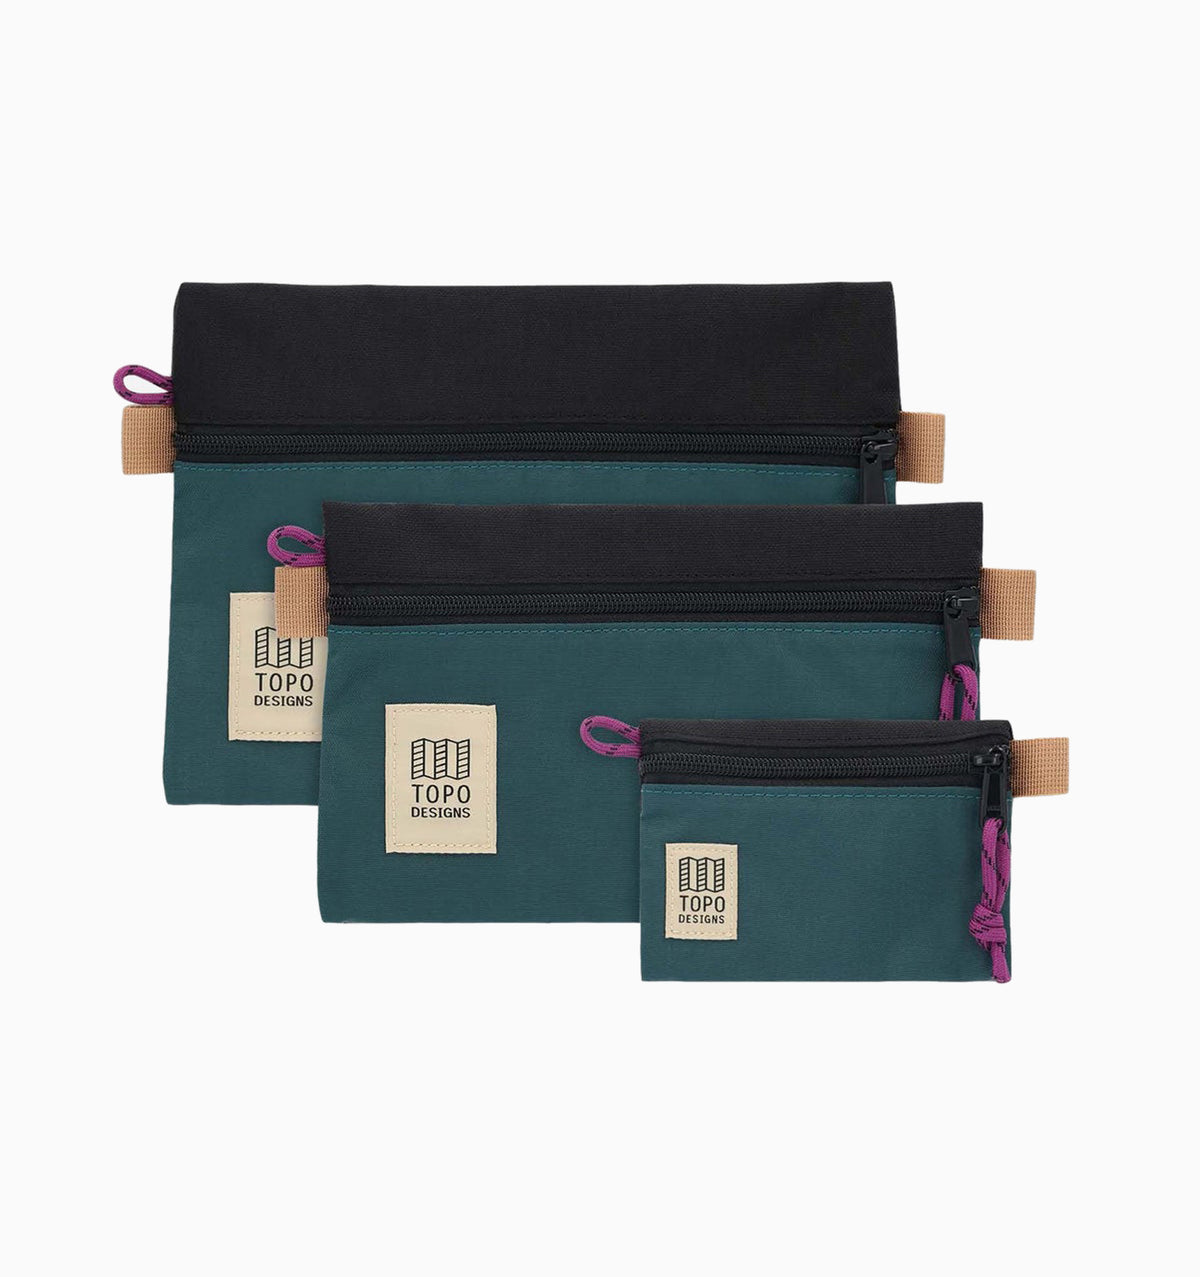 Topo Designs Small Accessory Bag - Botanic Green Black